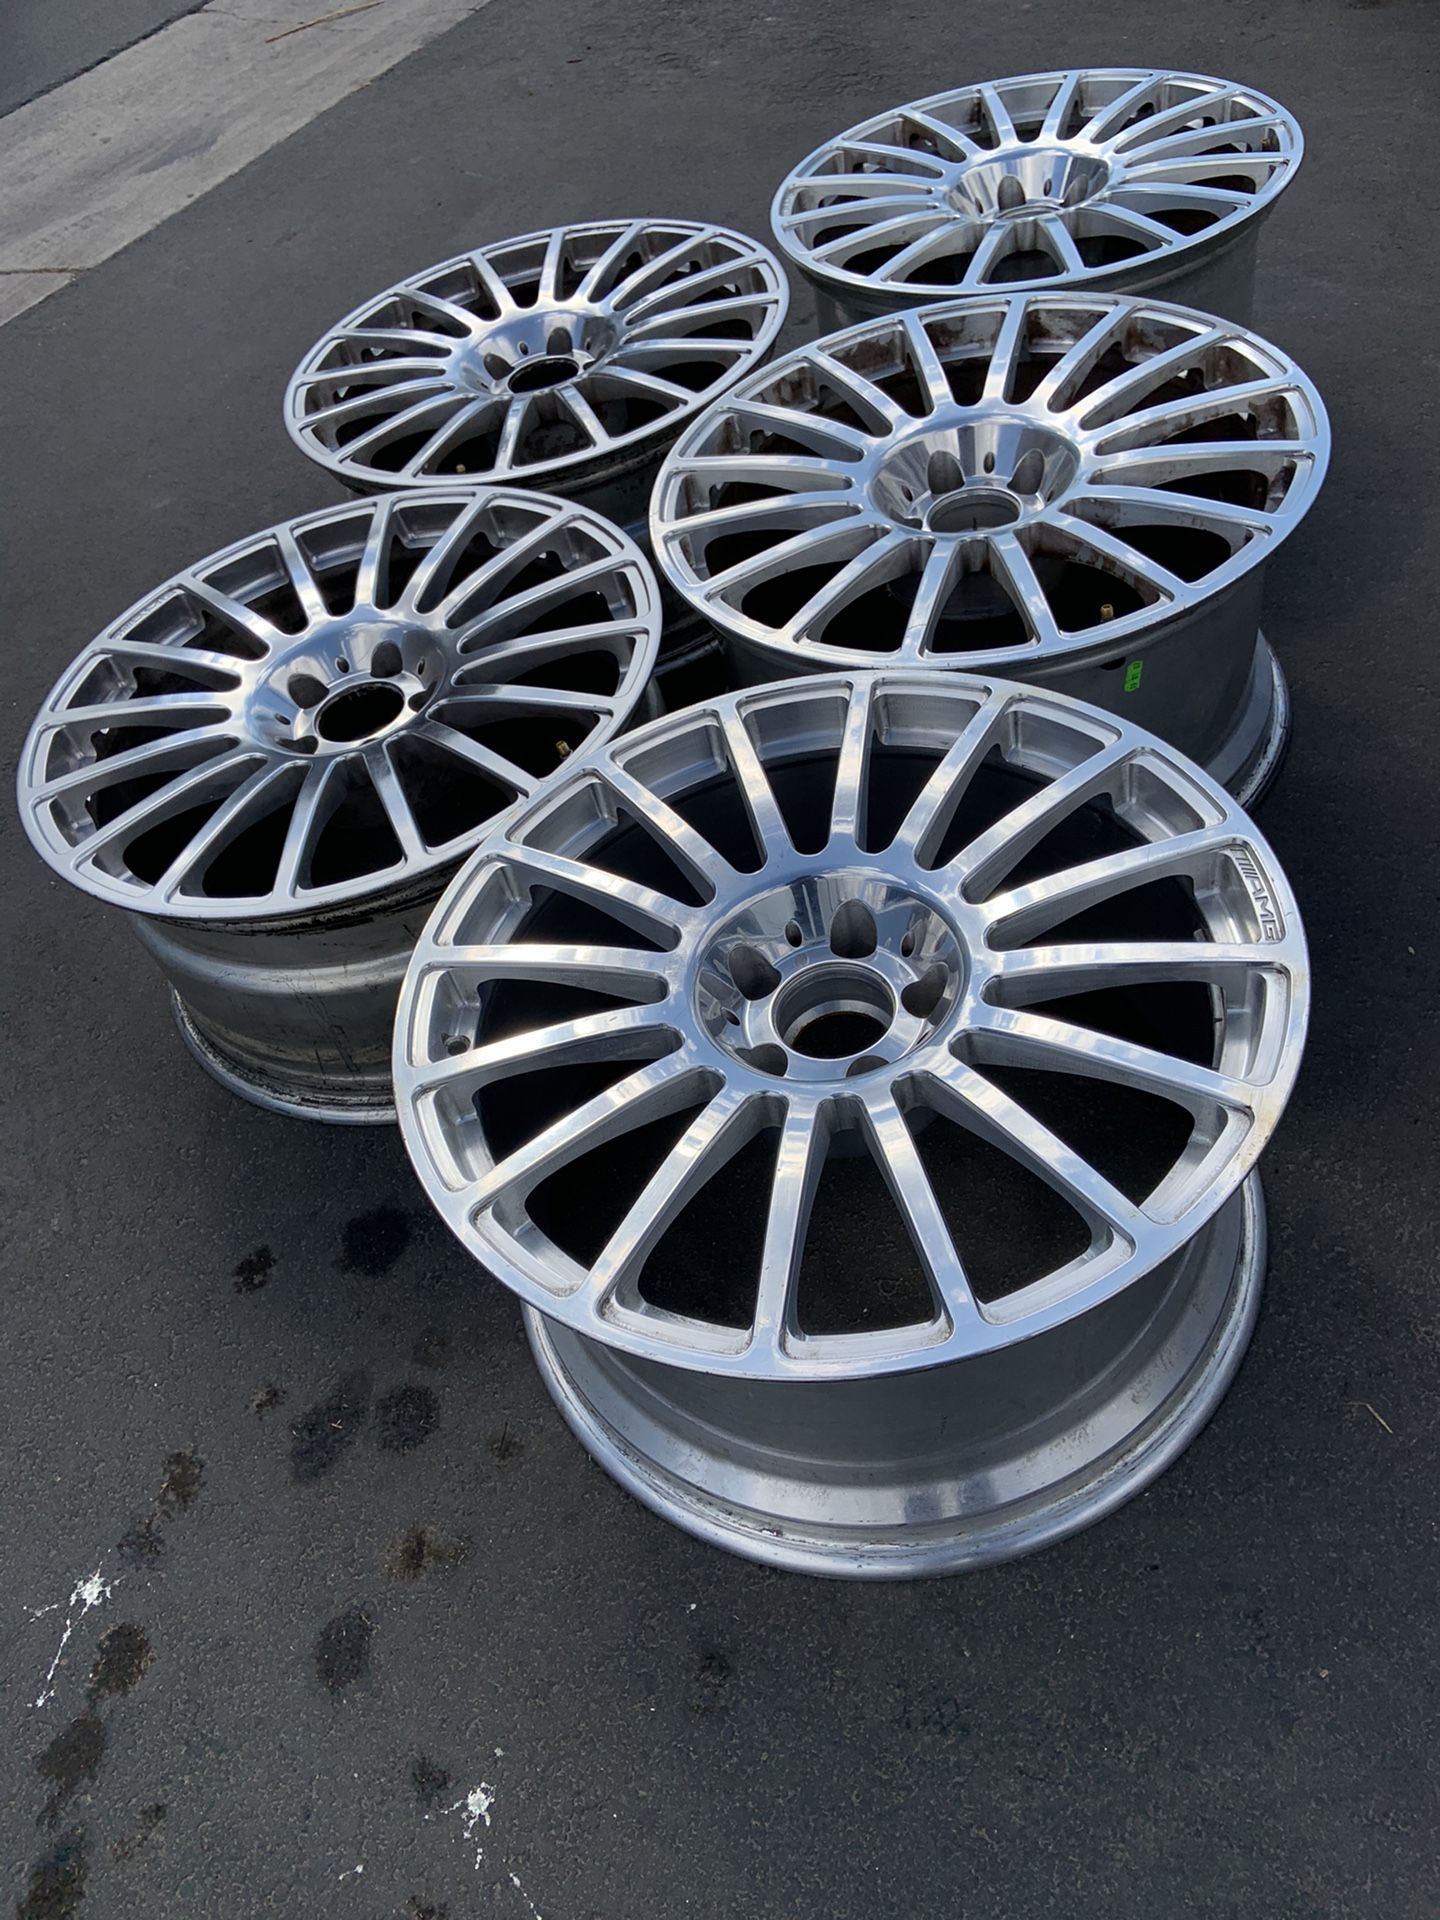 Mercedes Benz clk63 amg black series wheels (5 rims total)